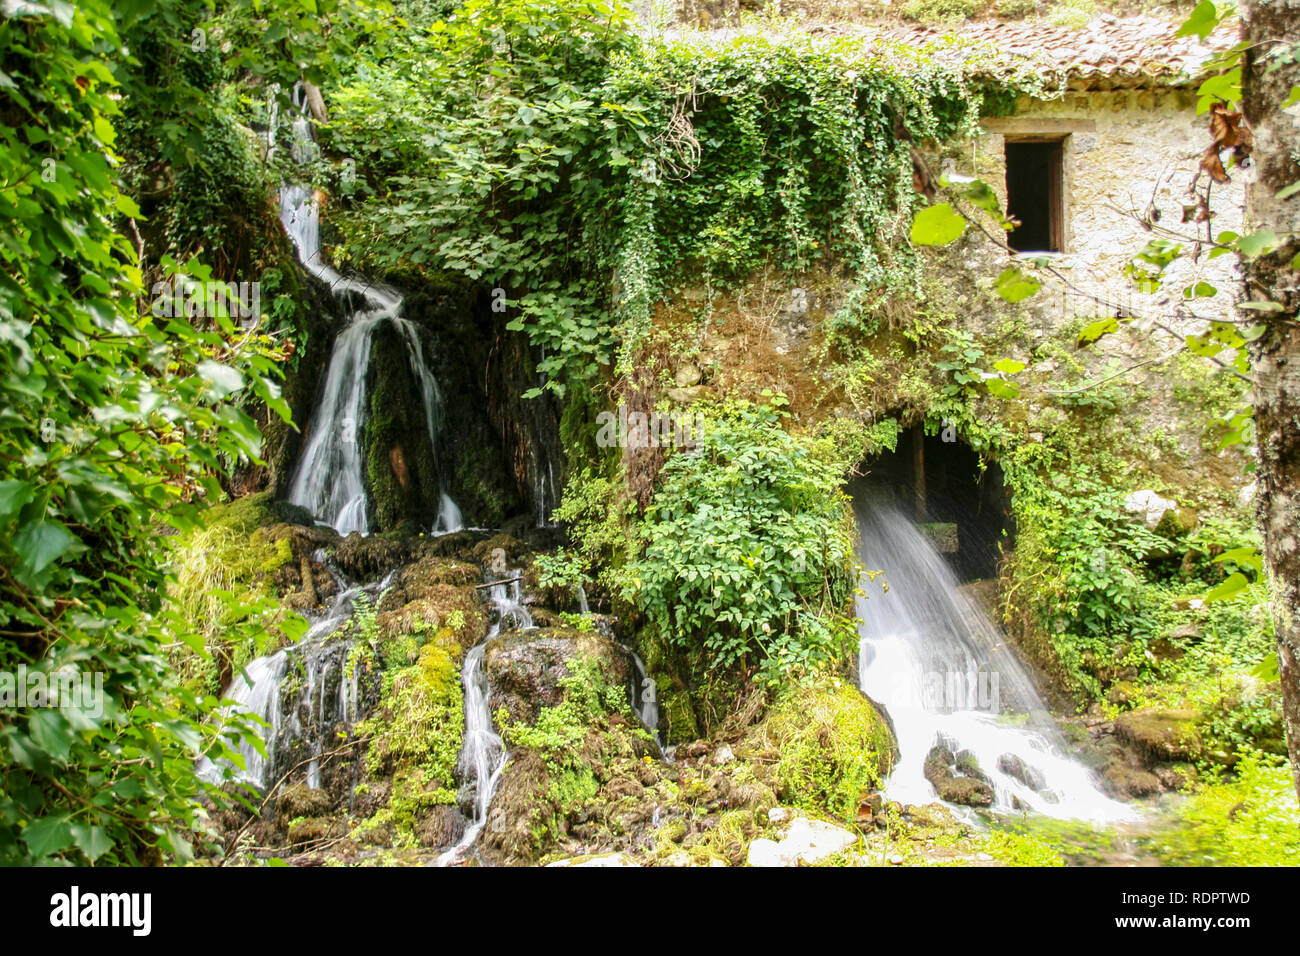 L'ancien moulin à eau dans la réserve naturelle de Morigerati, Grotte del Bussento par River dans le Parc National du Cilento, province de Salerne, Campanie, Italie Banque D'Images